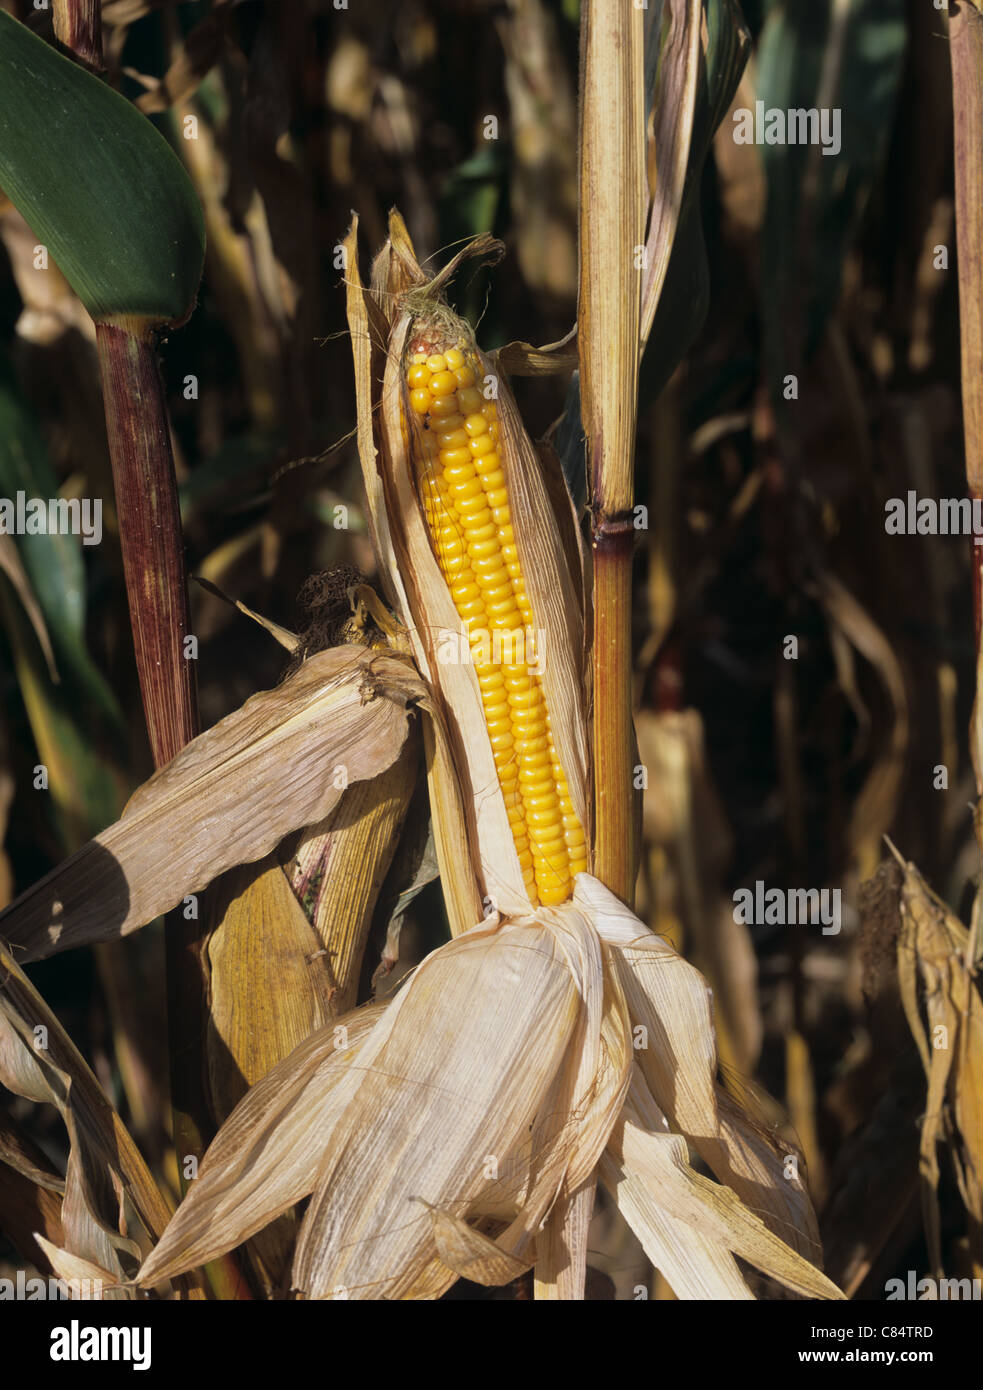 Le maïs mûr exposé s/n à la récolte des cultures fourragères sur Banque D'Images